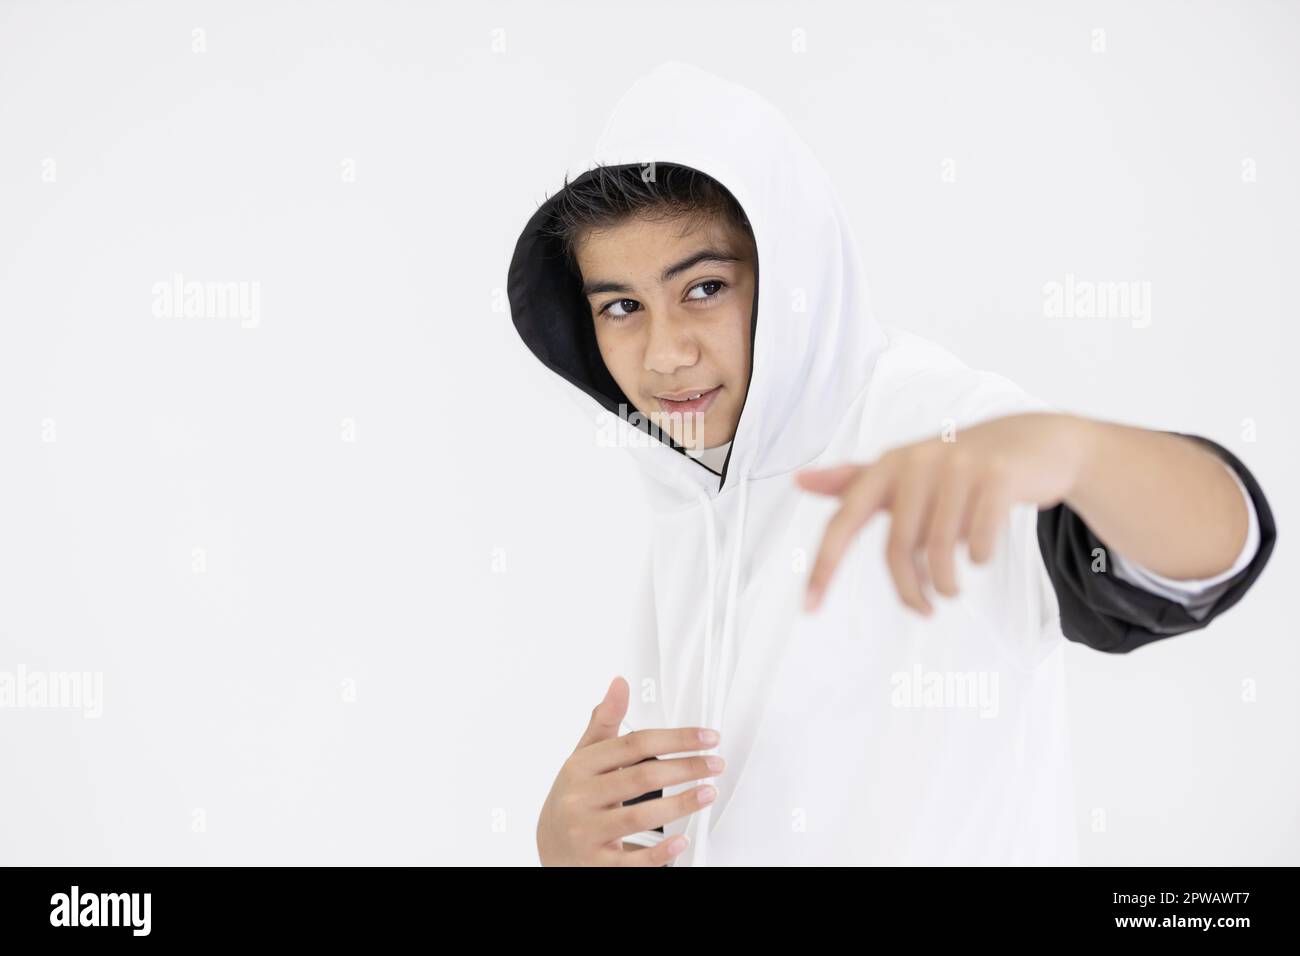 jeune garçon adolescent en hiphop dansant sur fond blanc Banque D'Images